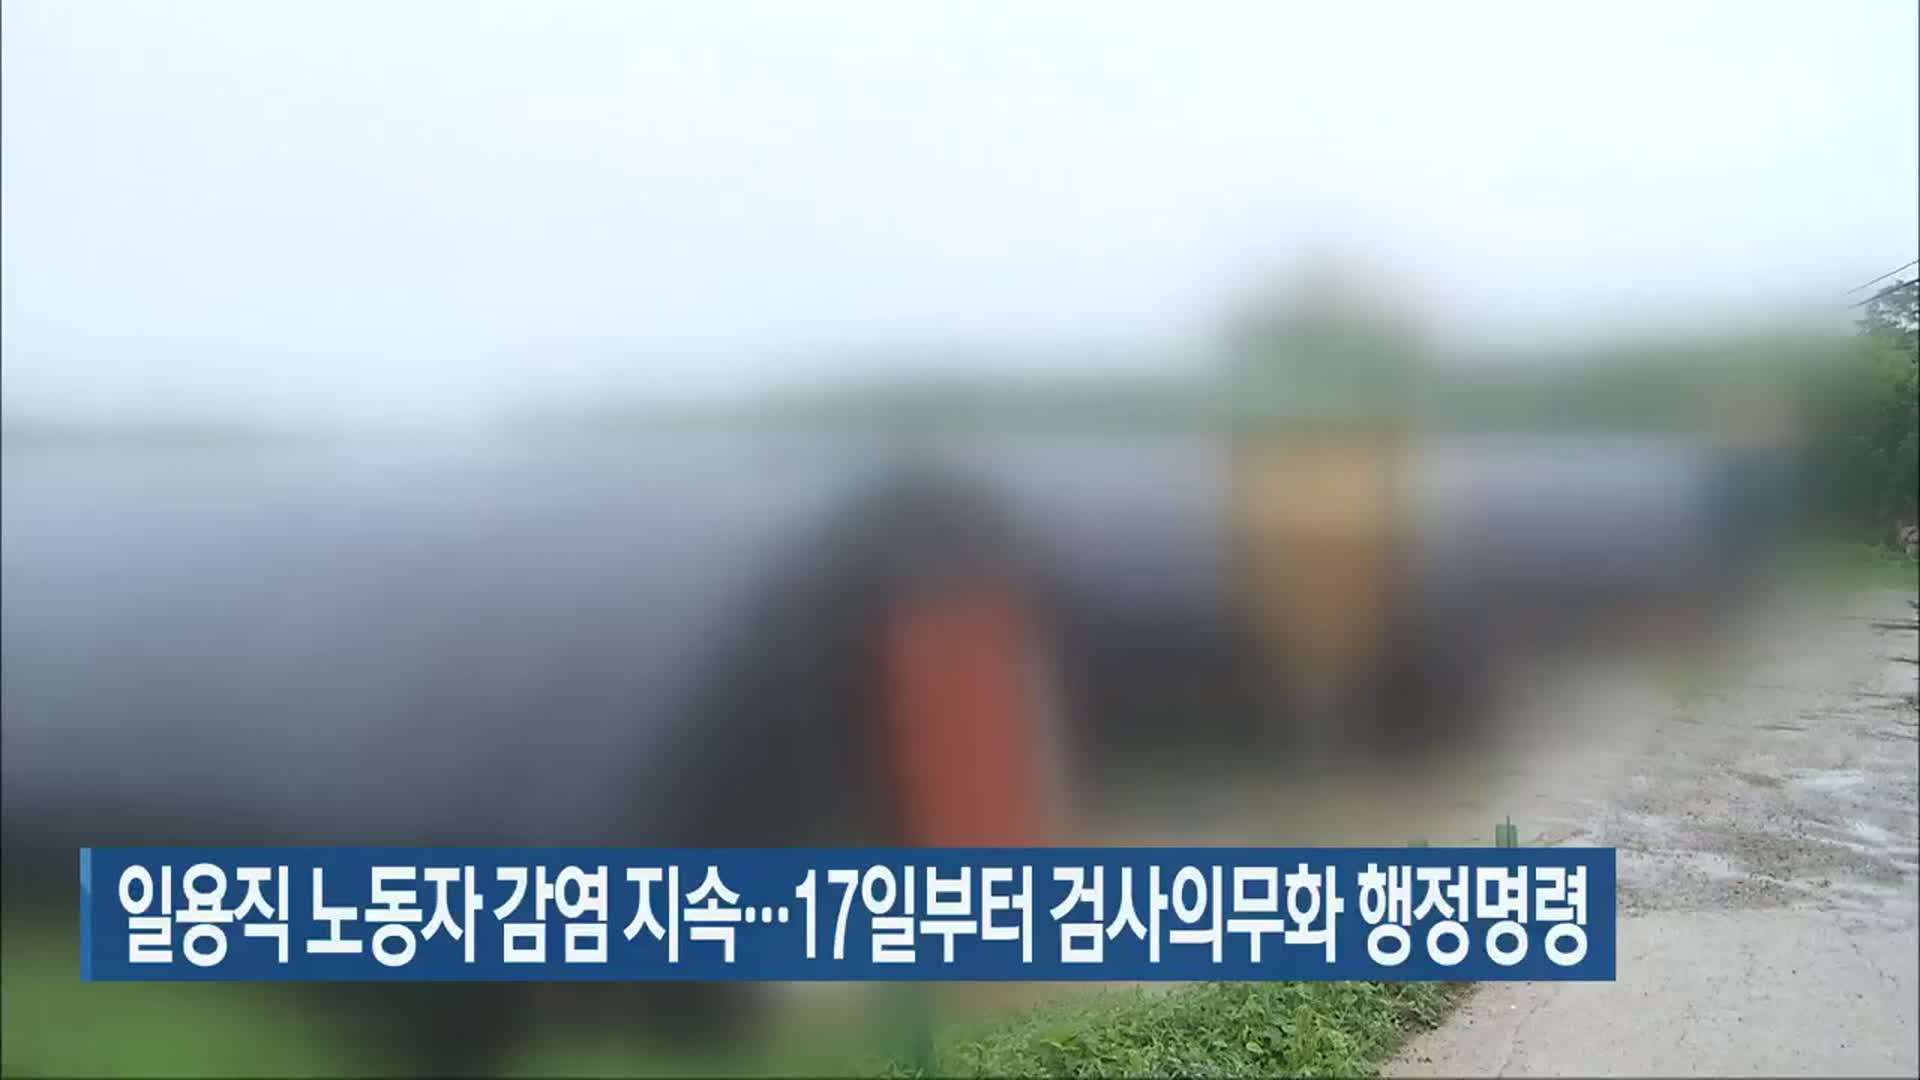 전북 일용직 노동자 감염 지속…17일부터 검사의무화 행정명령